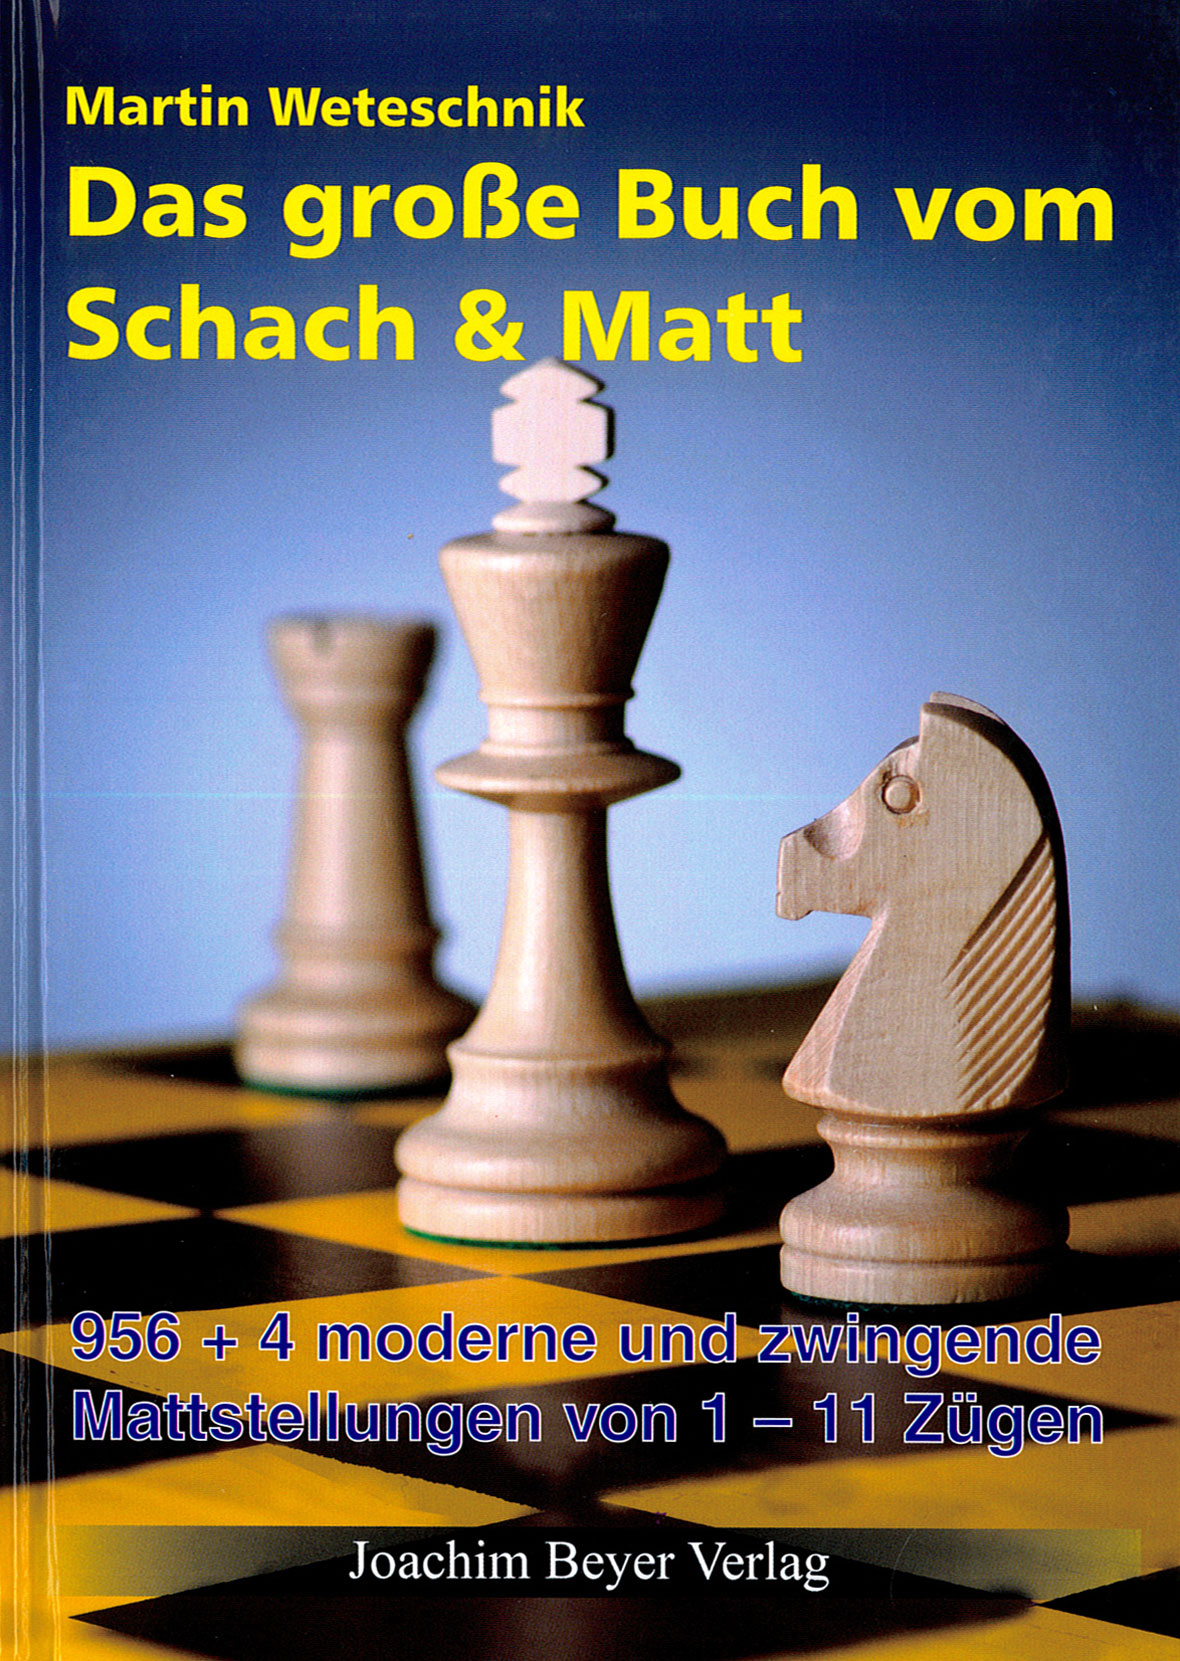 Weteschnik: Das große Buch vom Schach & Matt